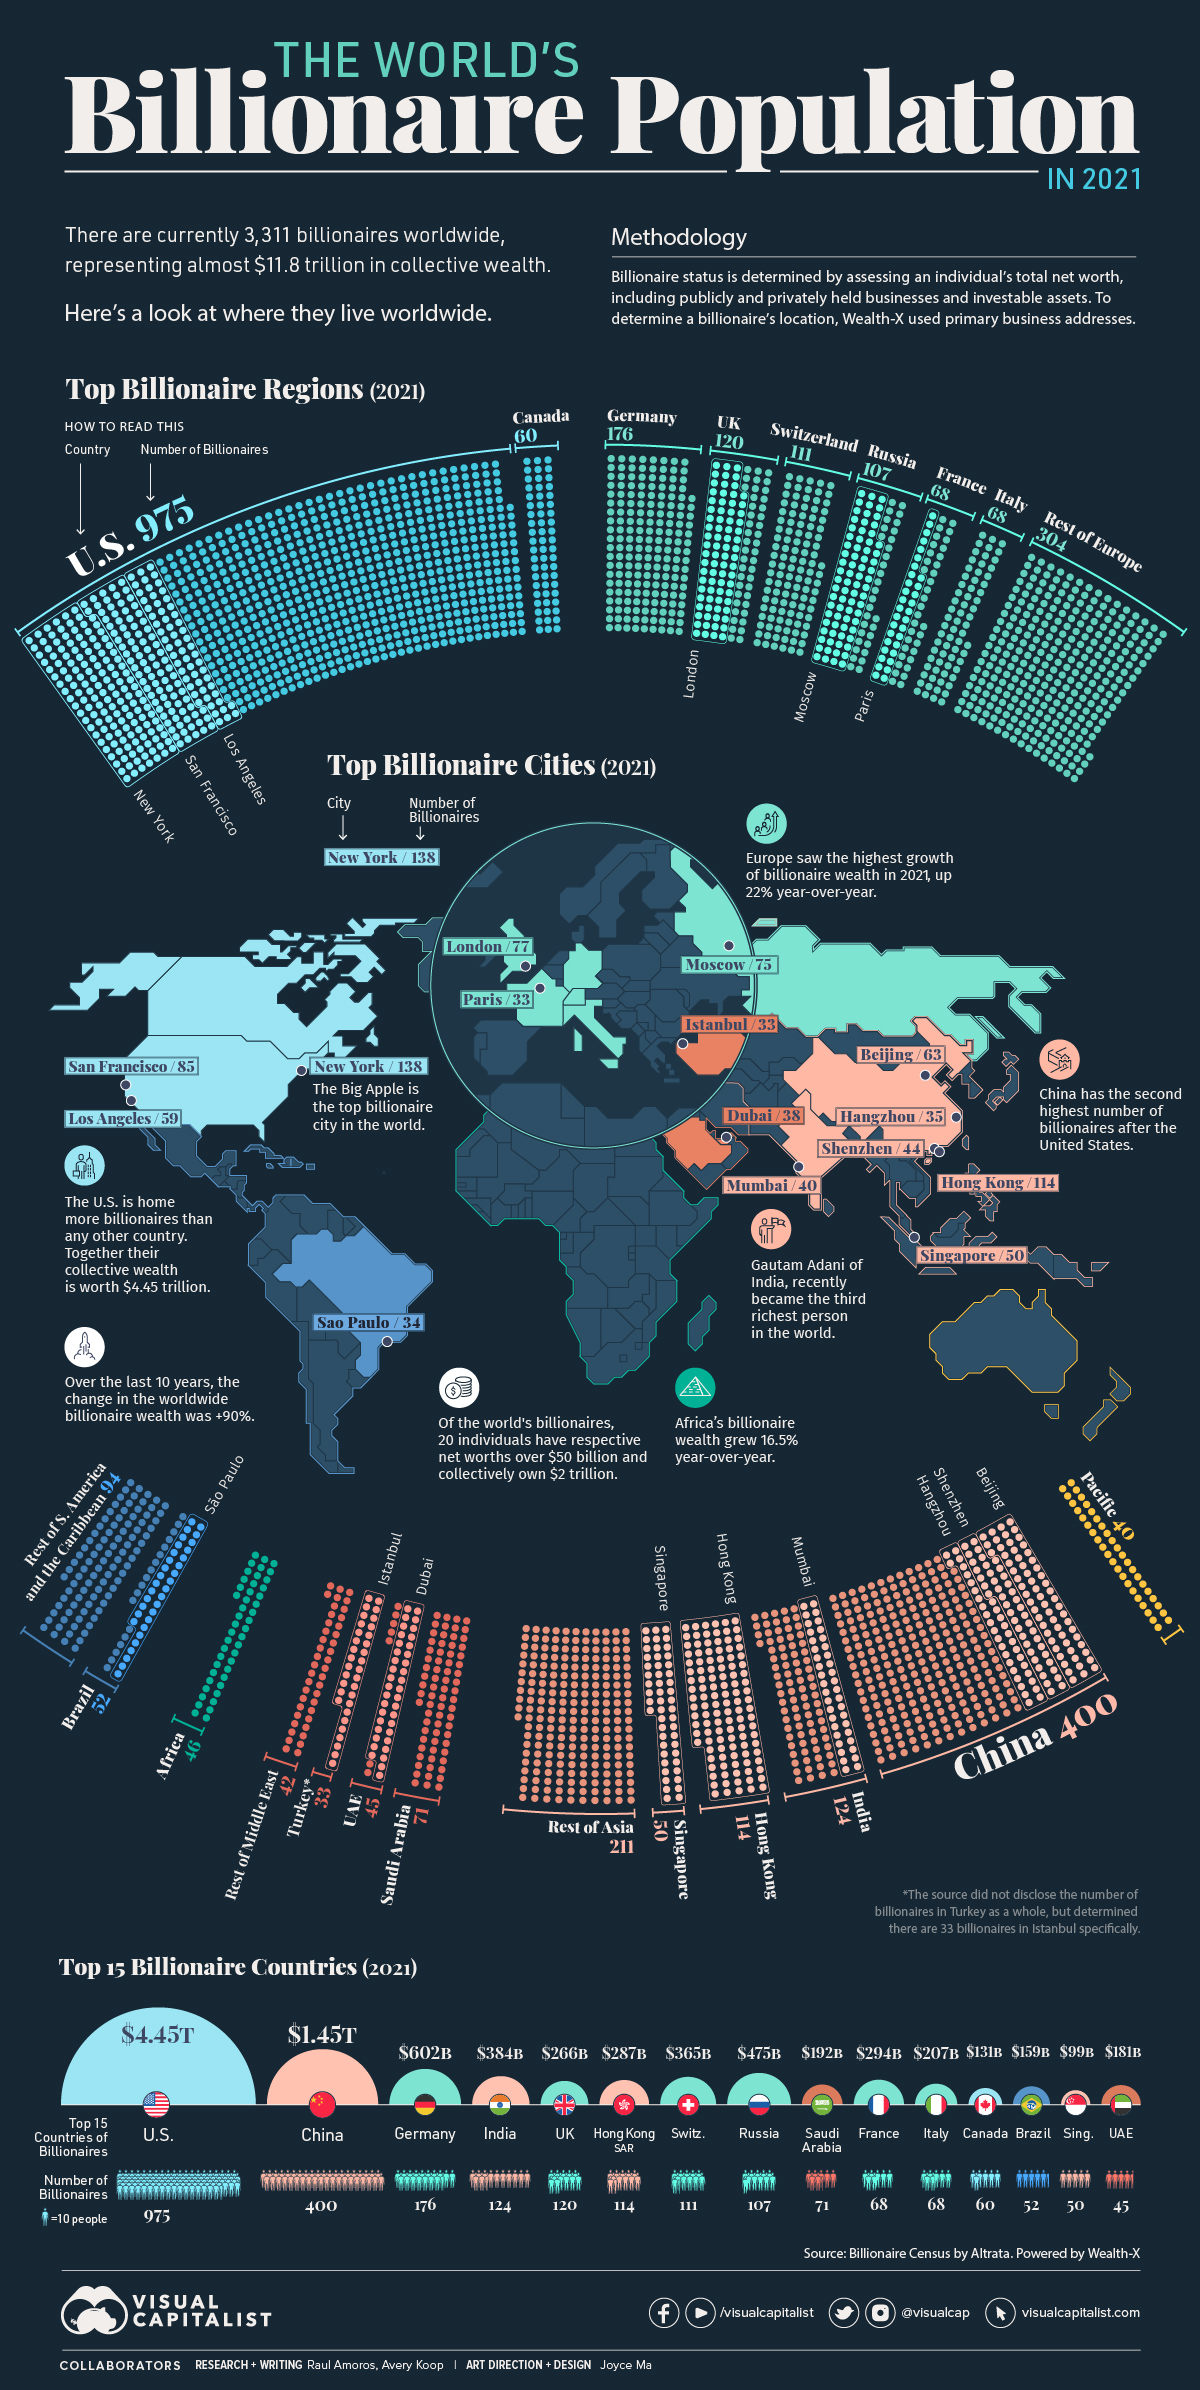 worlds-billionaire-population-1.jpg